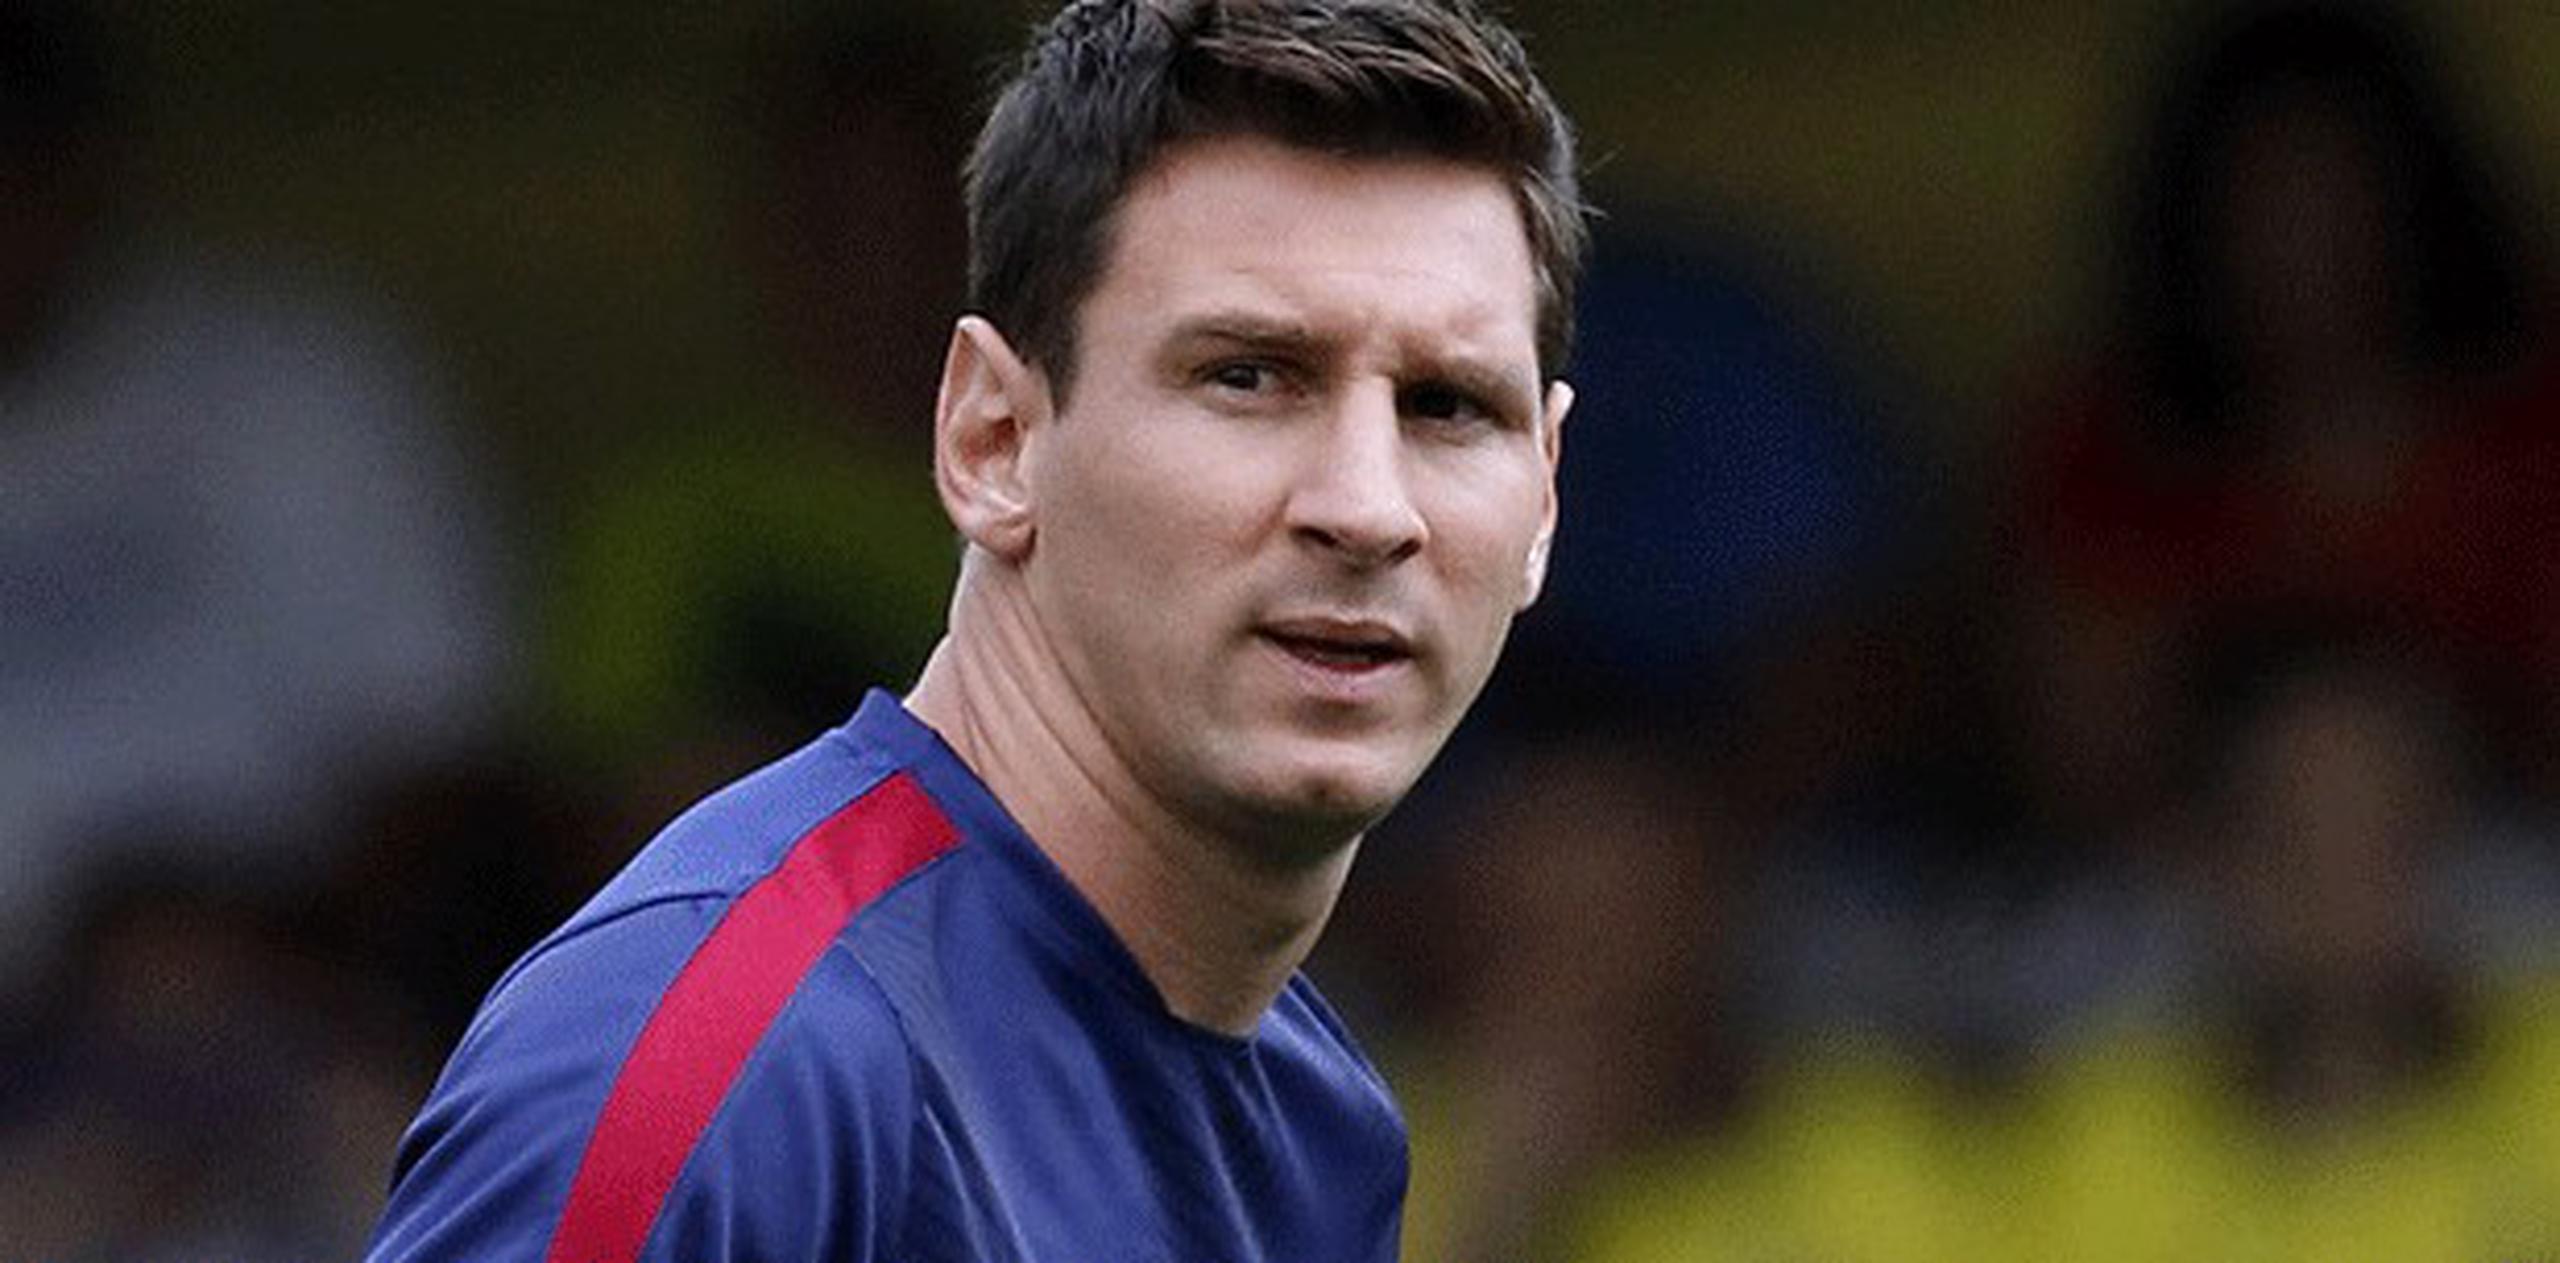 El argentino Lionel Messi no participó con su selección en los dos partidos amistosos debido a una molestia en el pie derecho. (Archivo)